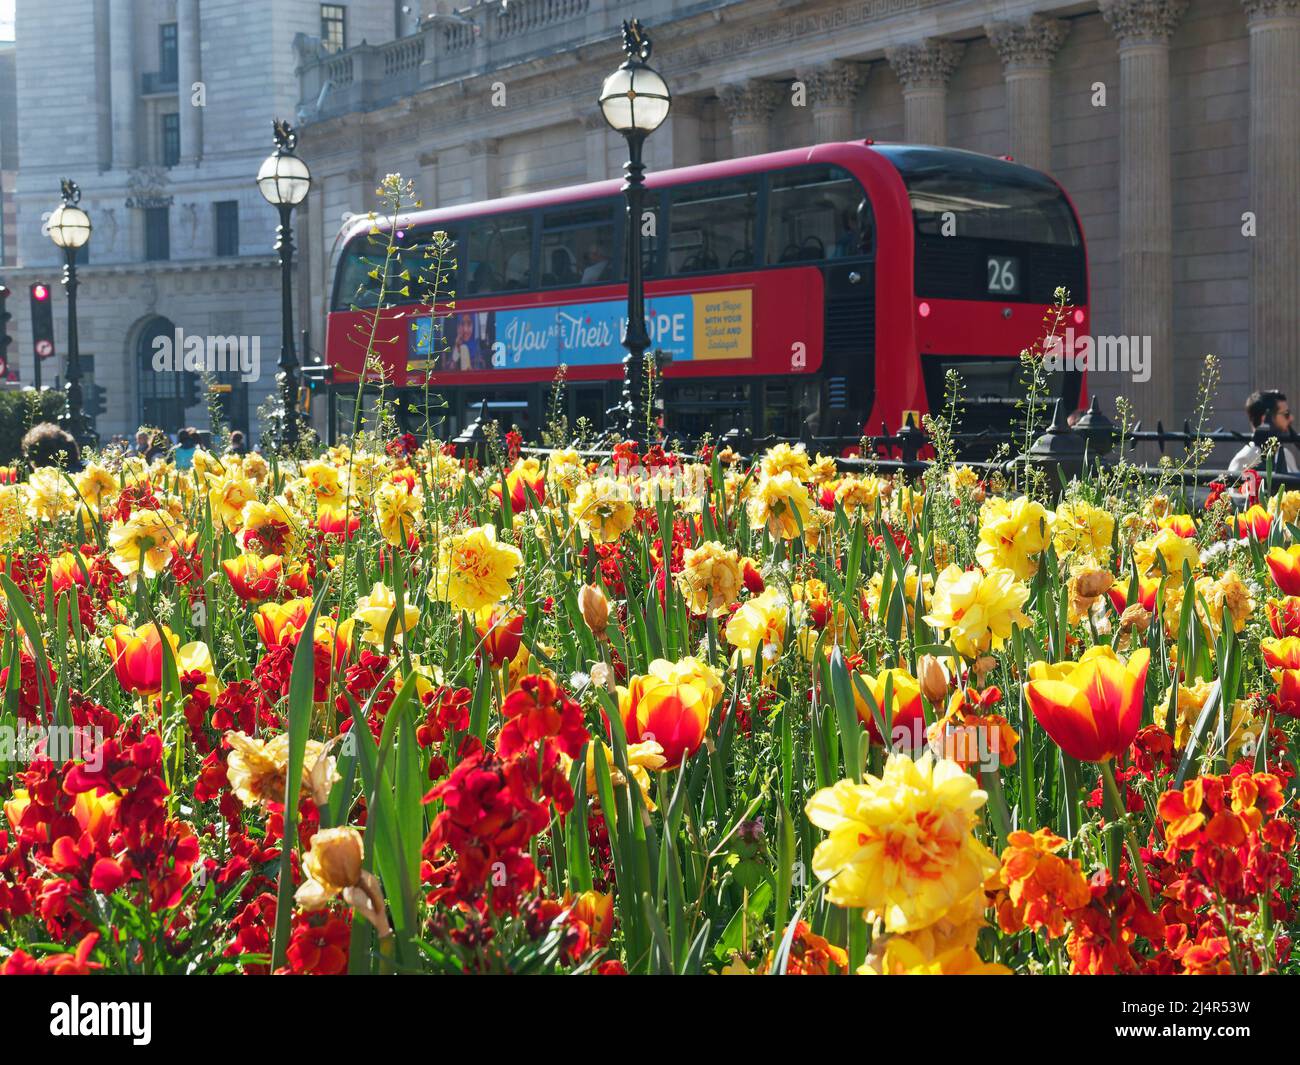 Vista de un autobús de Londres paró fuera del Banco de Inglaterra en un brillante día de primavera con coloridas flores de primavera en primer plano Foto de stock